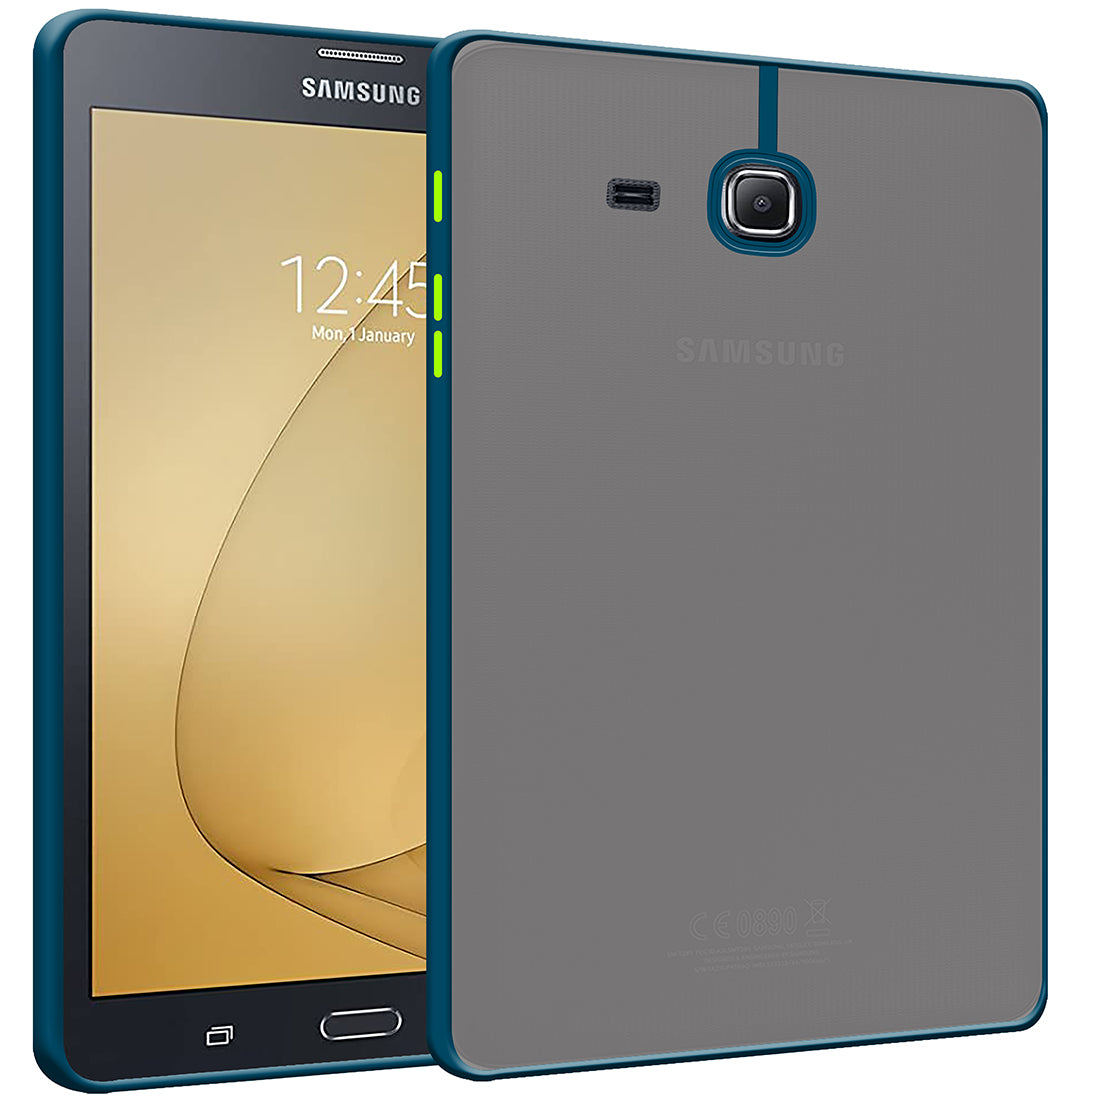 Samsung Galaxy Tab T285 (7 inch)